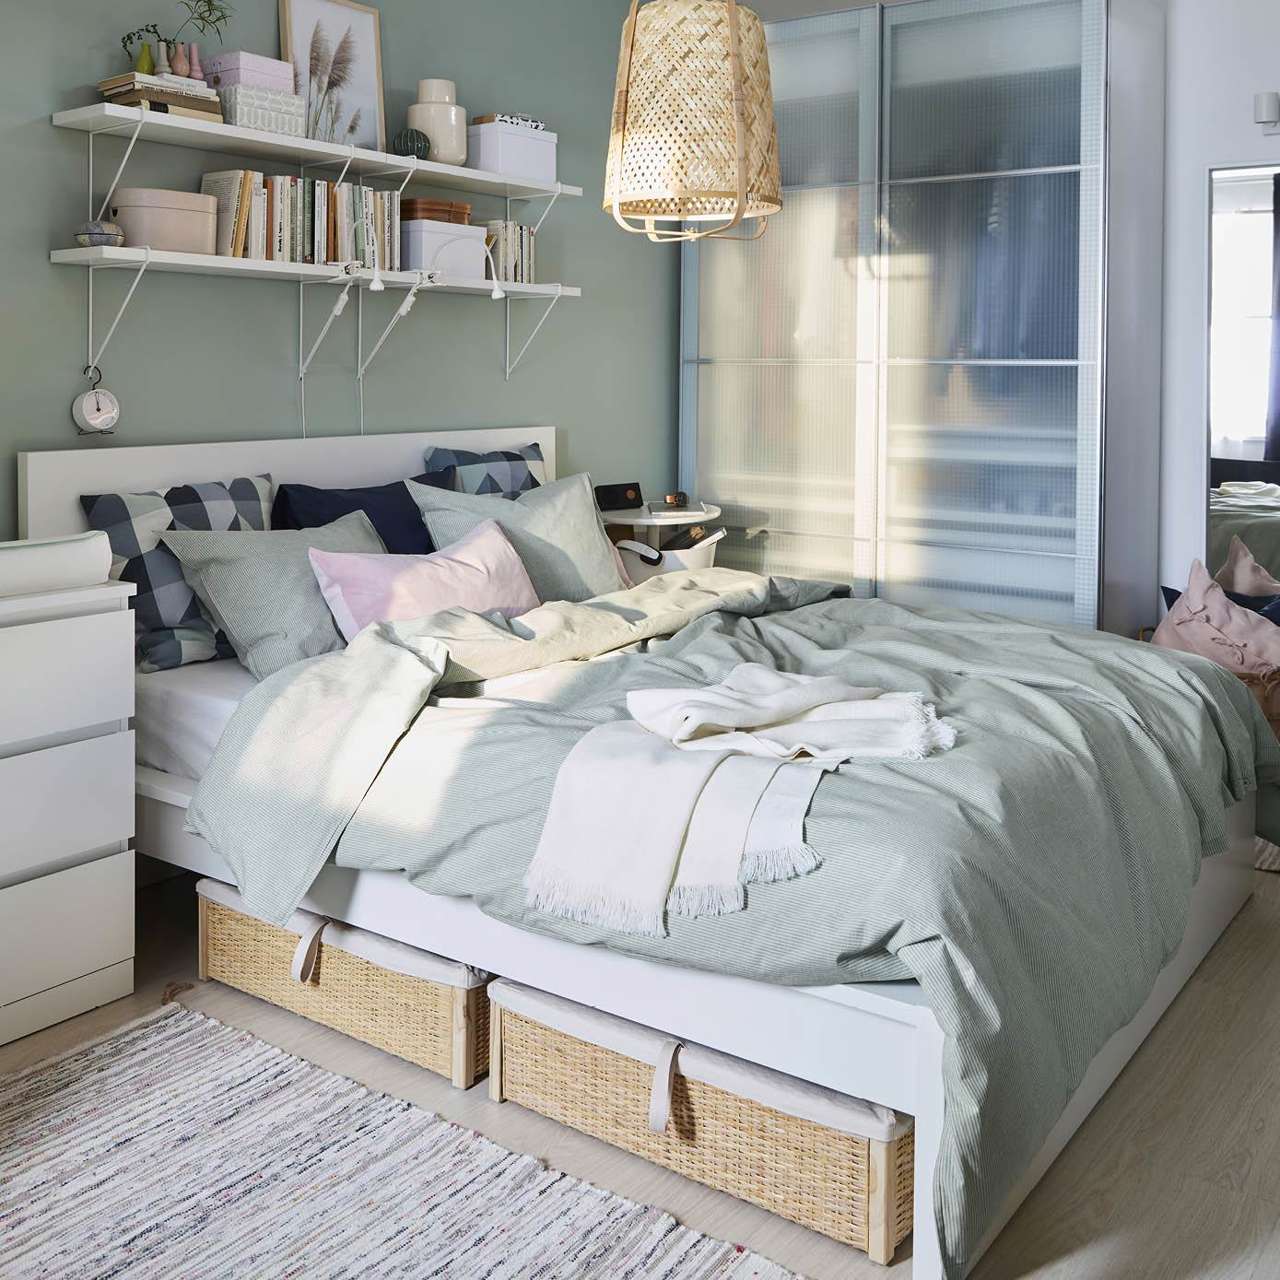 Lacecap Hydrangea: el color en tendencia según Pantone para paredes que reduce la ansiedad y te ayuda a dormir